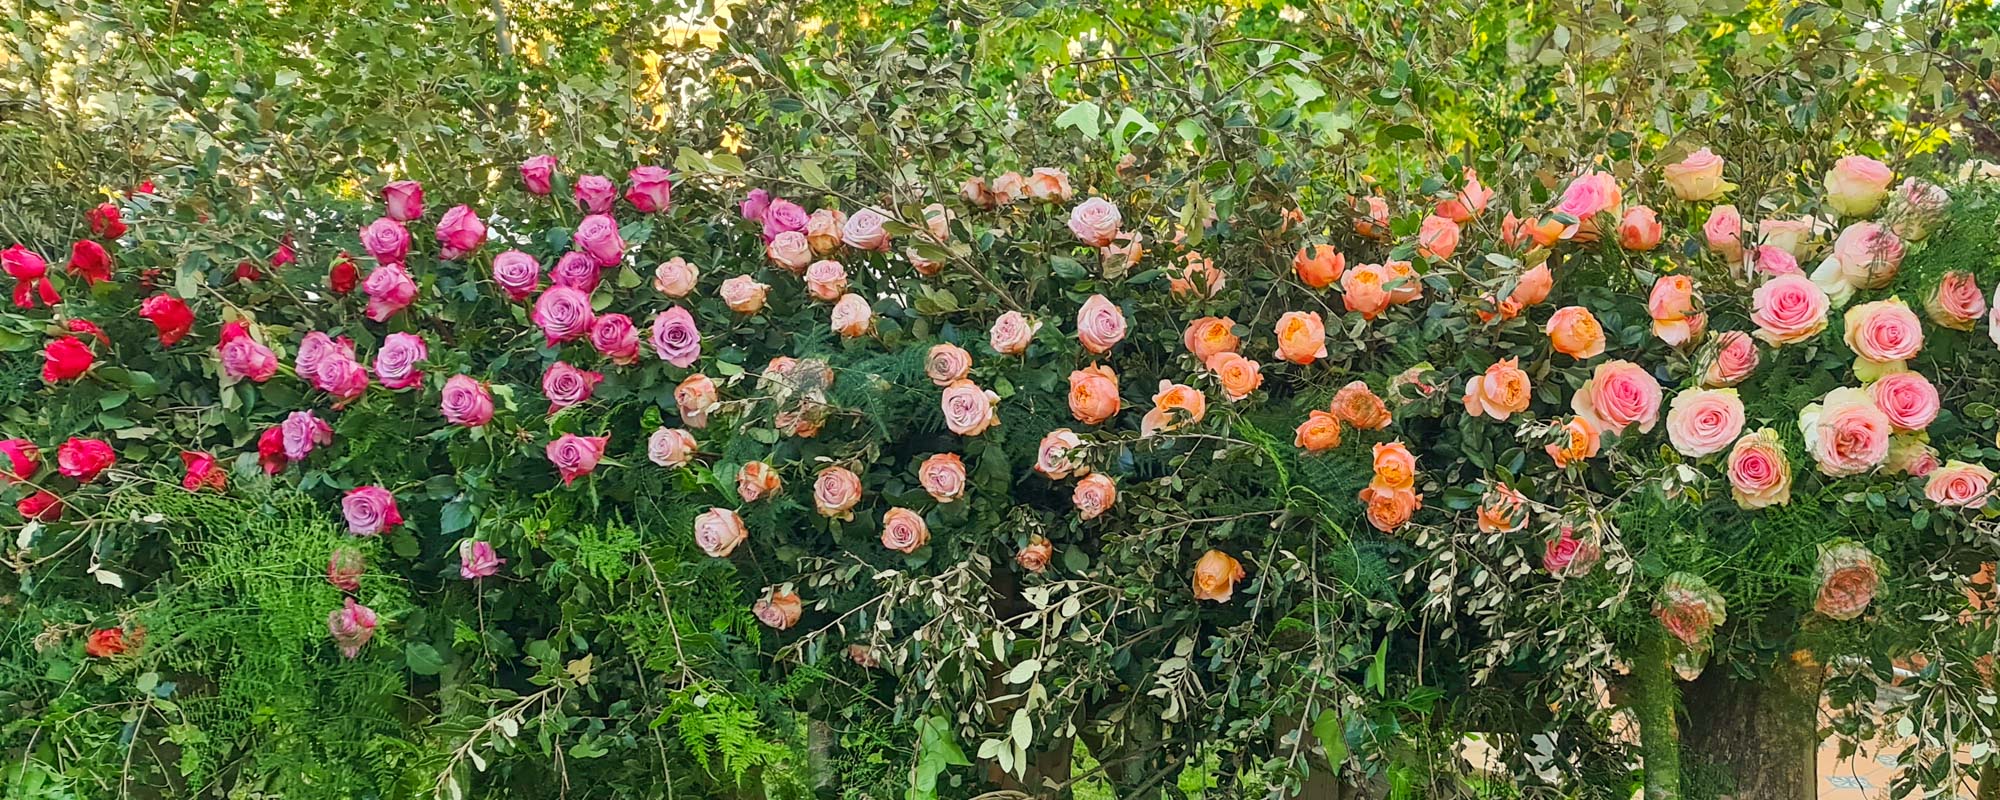 Significado del color de las rosas - Cosas de rosas